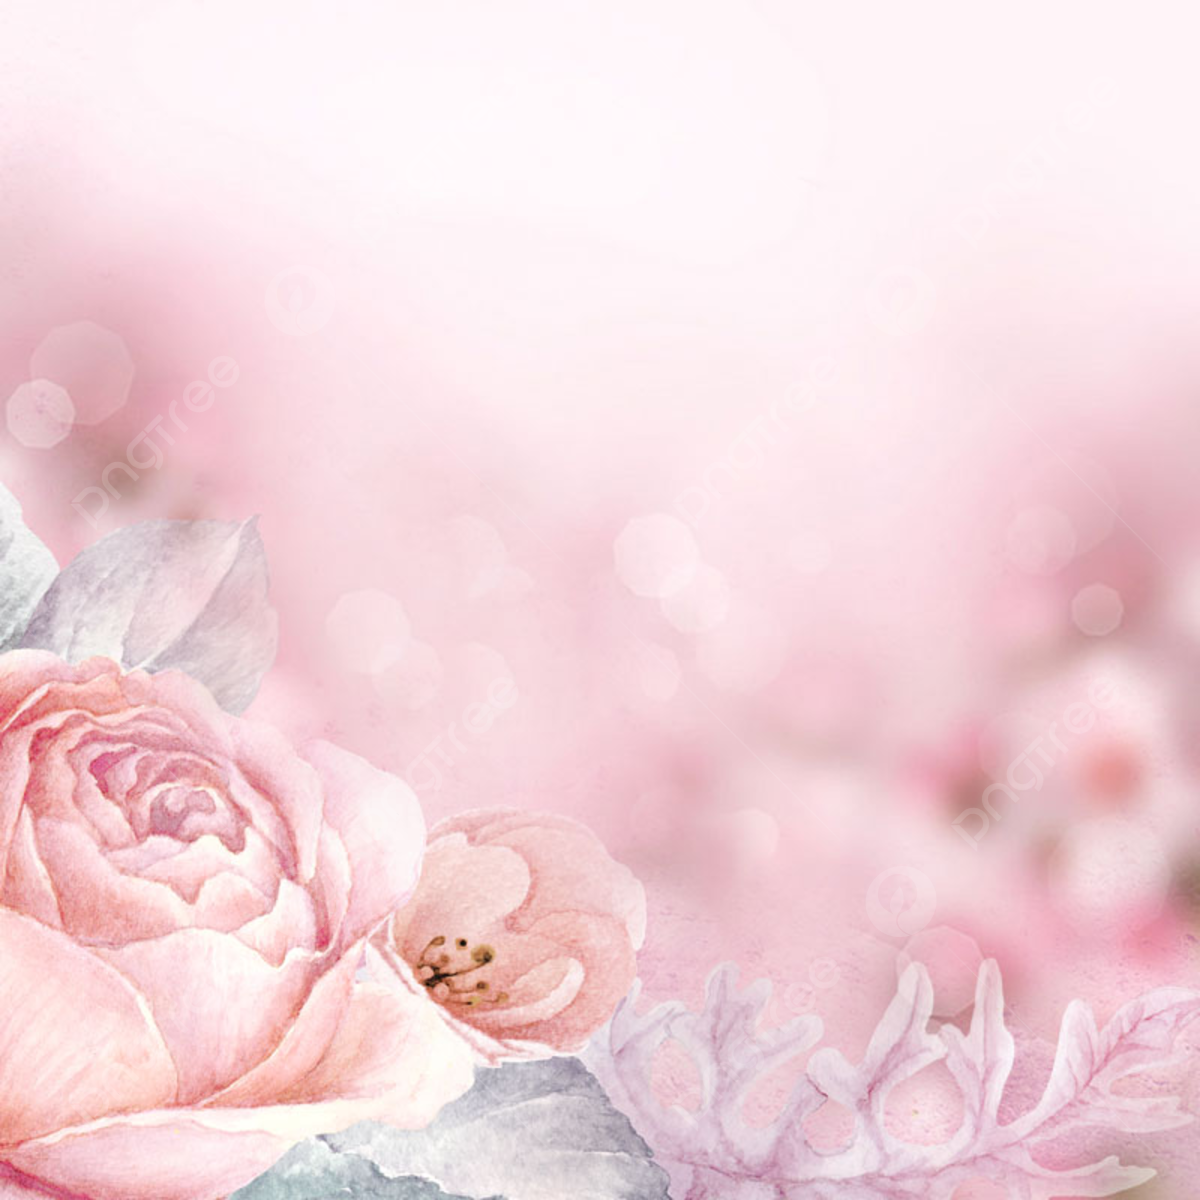  Pinke ästhetik Hintergrundbild 1200x1200. Pink Background Romantic Beauty Bee Collecting Honey Cosmetics, Rosa Hintergrund, Romantische Schönheit, Biene Sammelt Honig Hintergrund, Foto und Bild zum kostenlosen Download